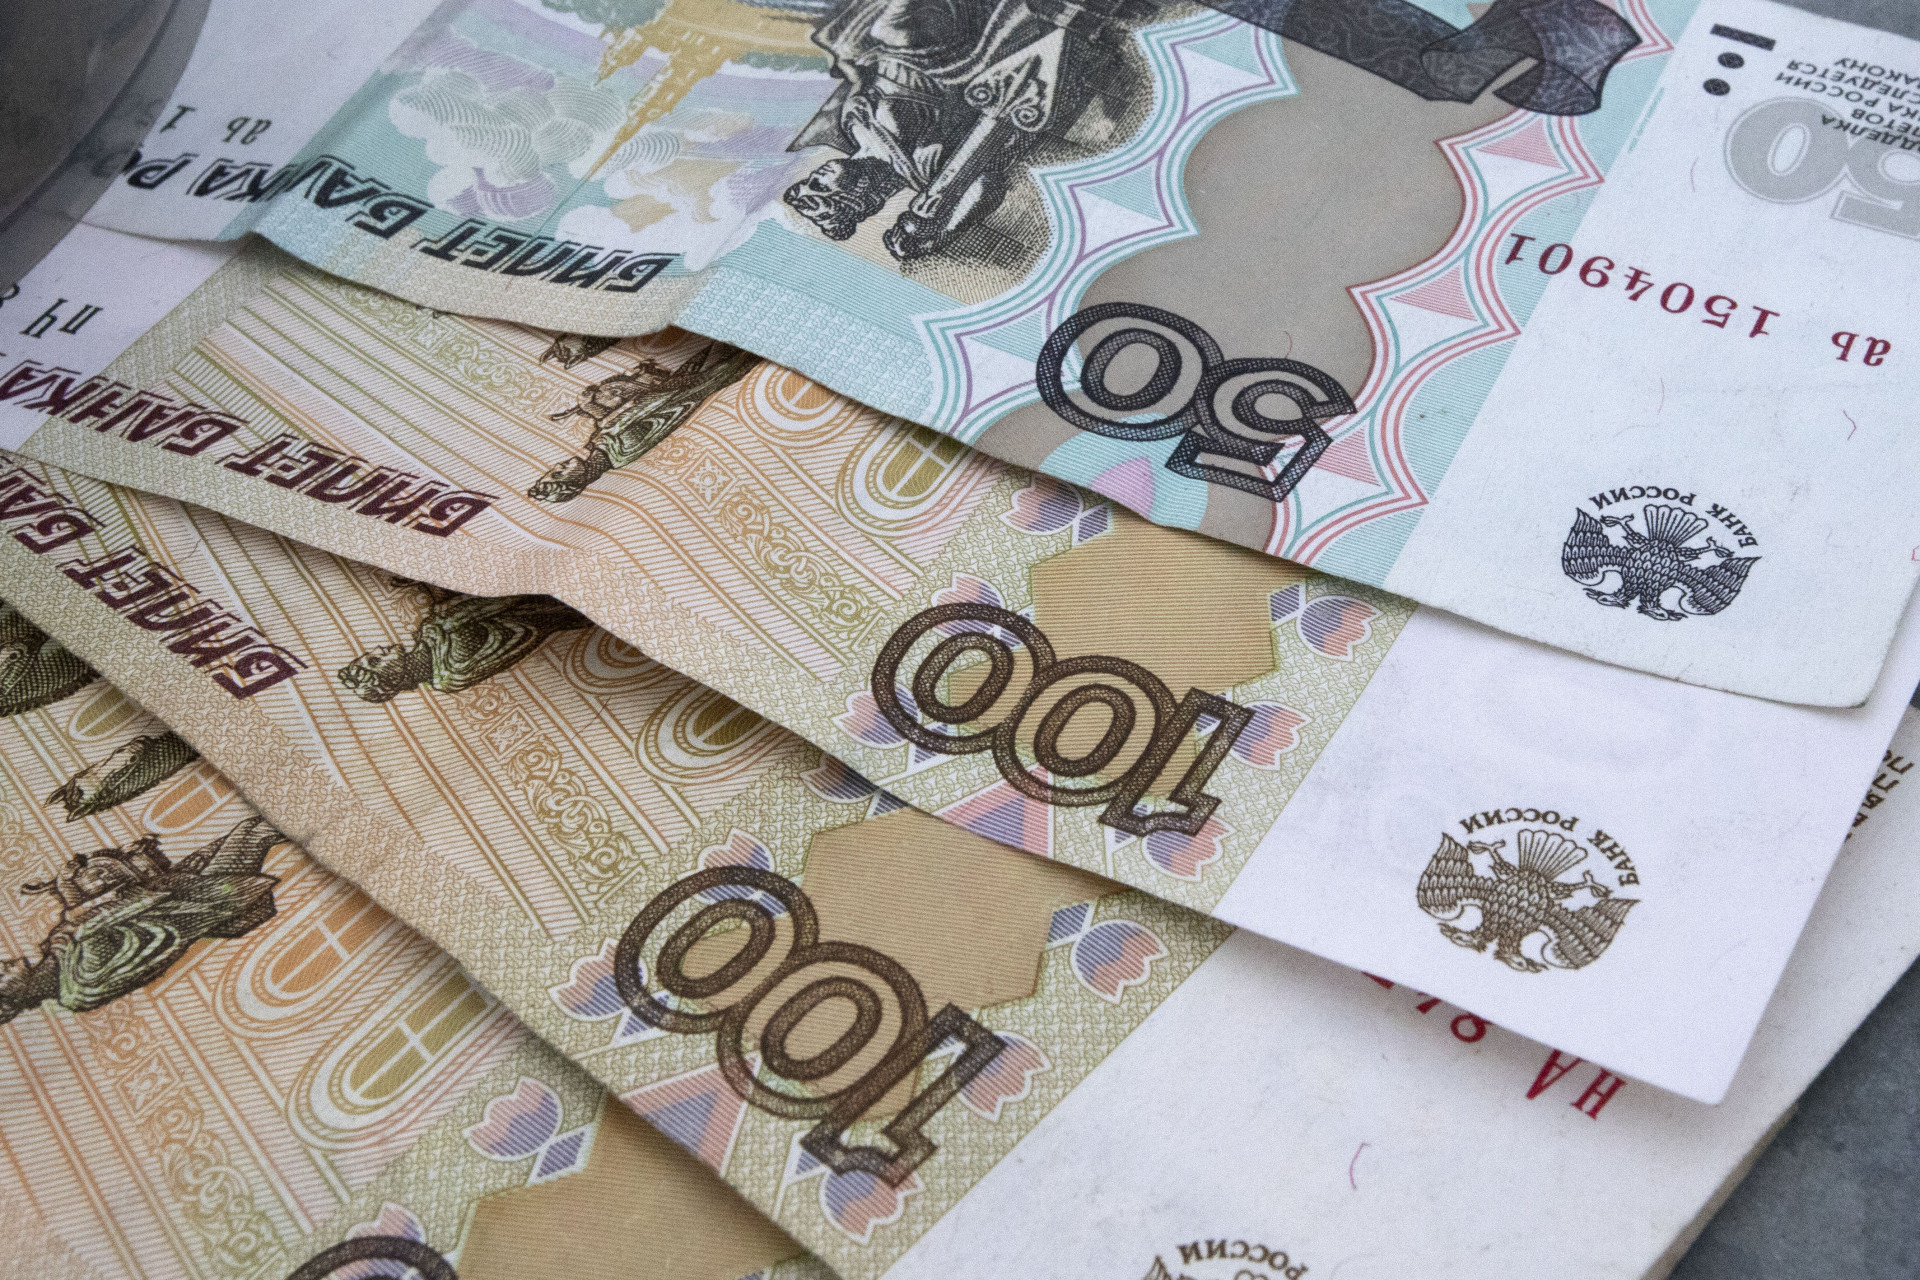 Два жителя Киреевска украли с чужой банковской карты 683 рубля